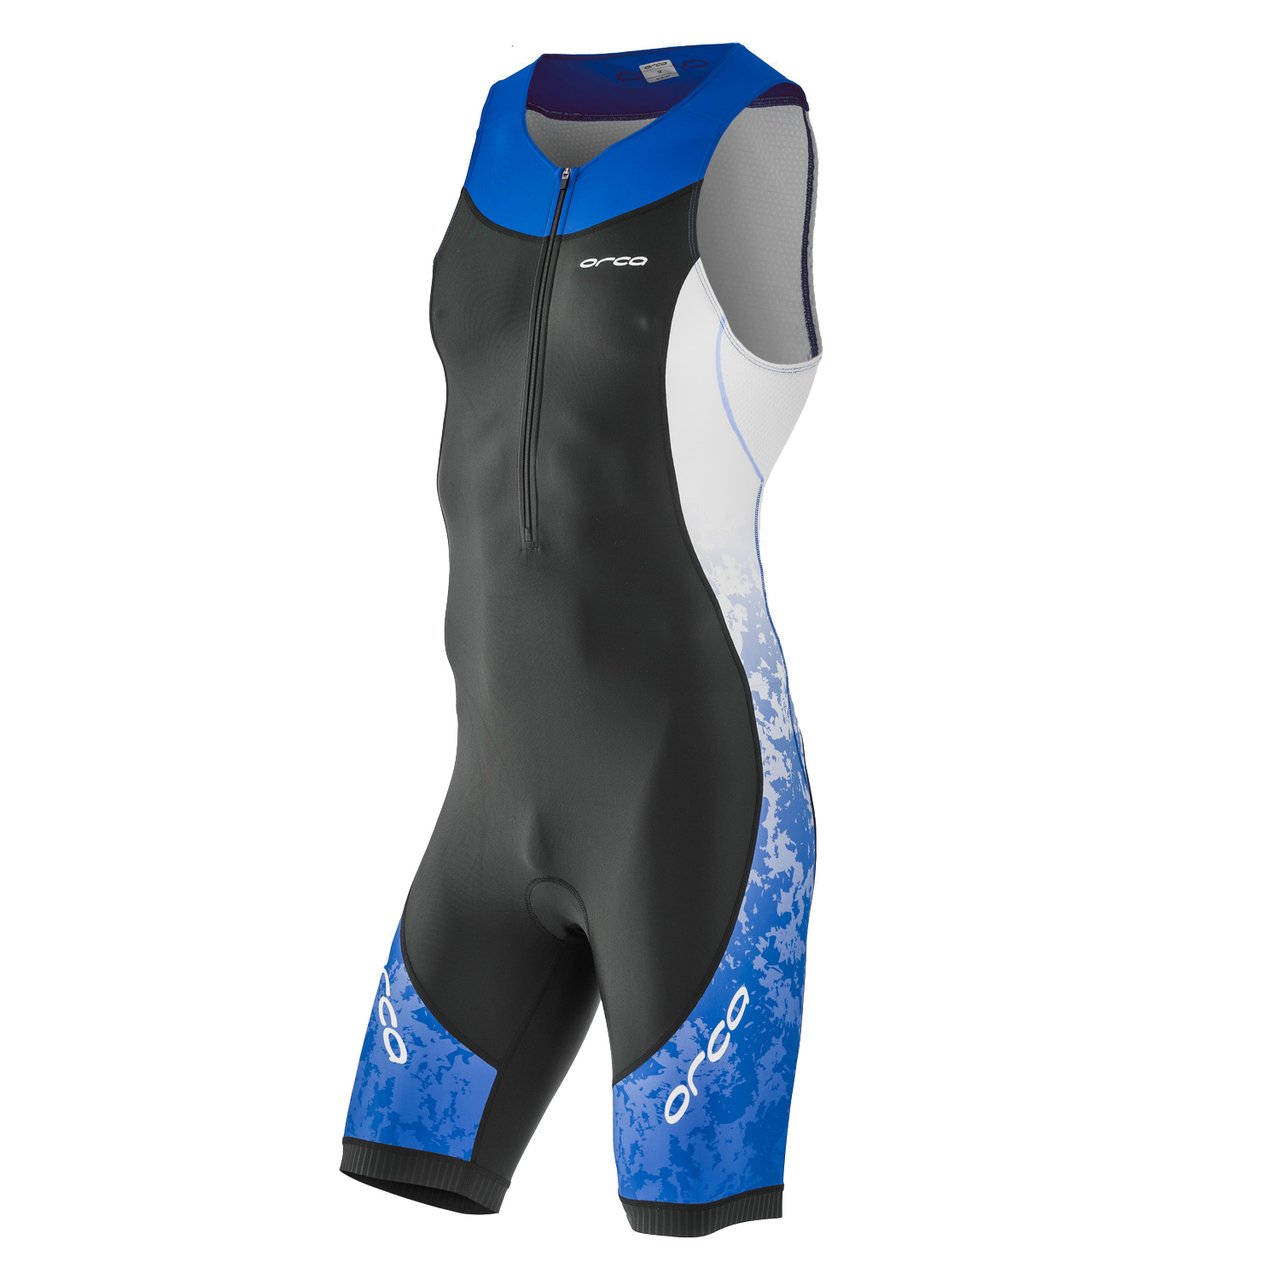 Комбинезон для триатлона Orca Core Race suit, 2018, M, черный/синий, HVC0 комбинезон для триатлона orca 226 kompress aero short sleeve race suit белый 2018 hvdf